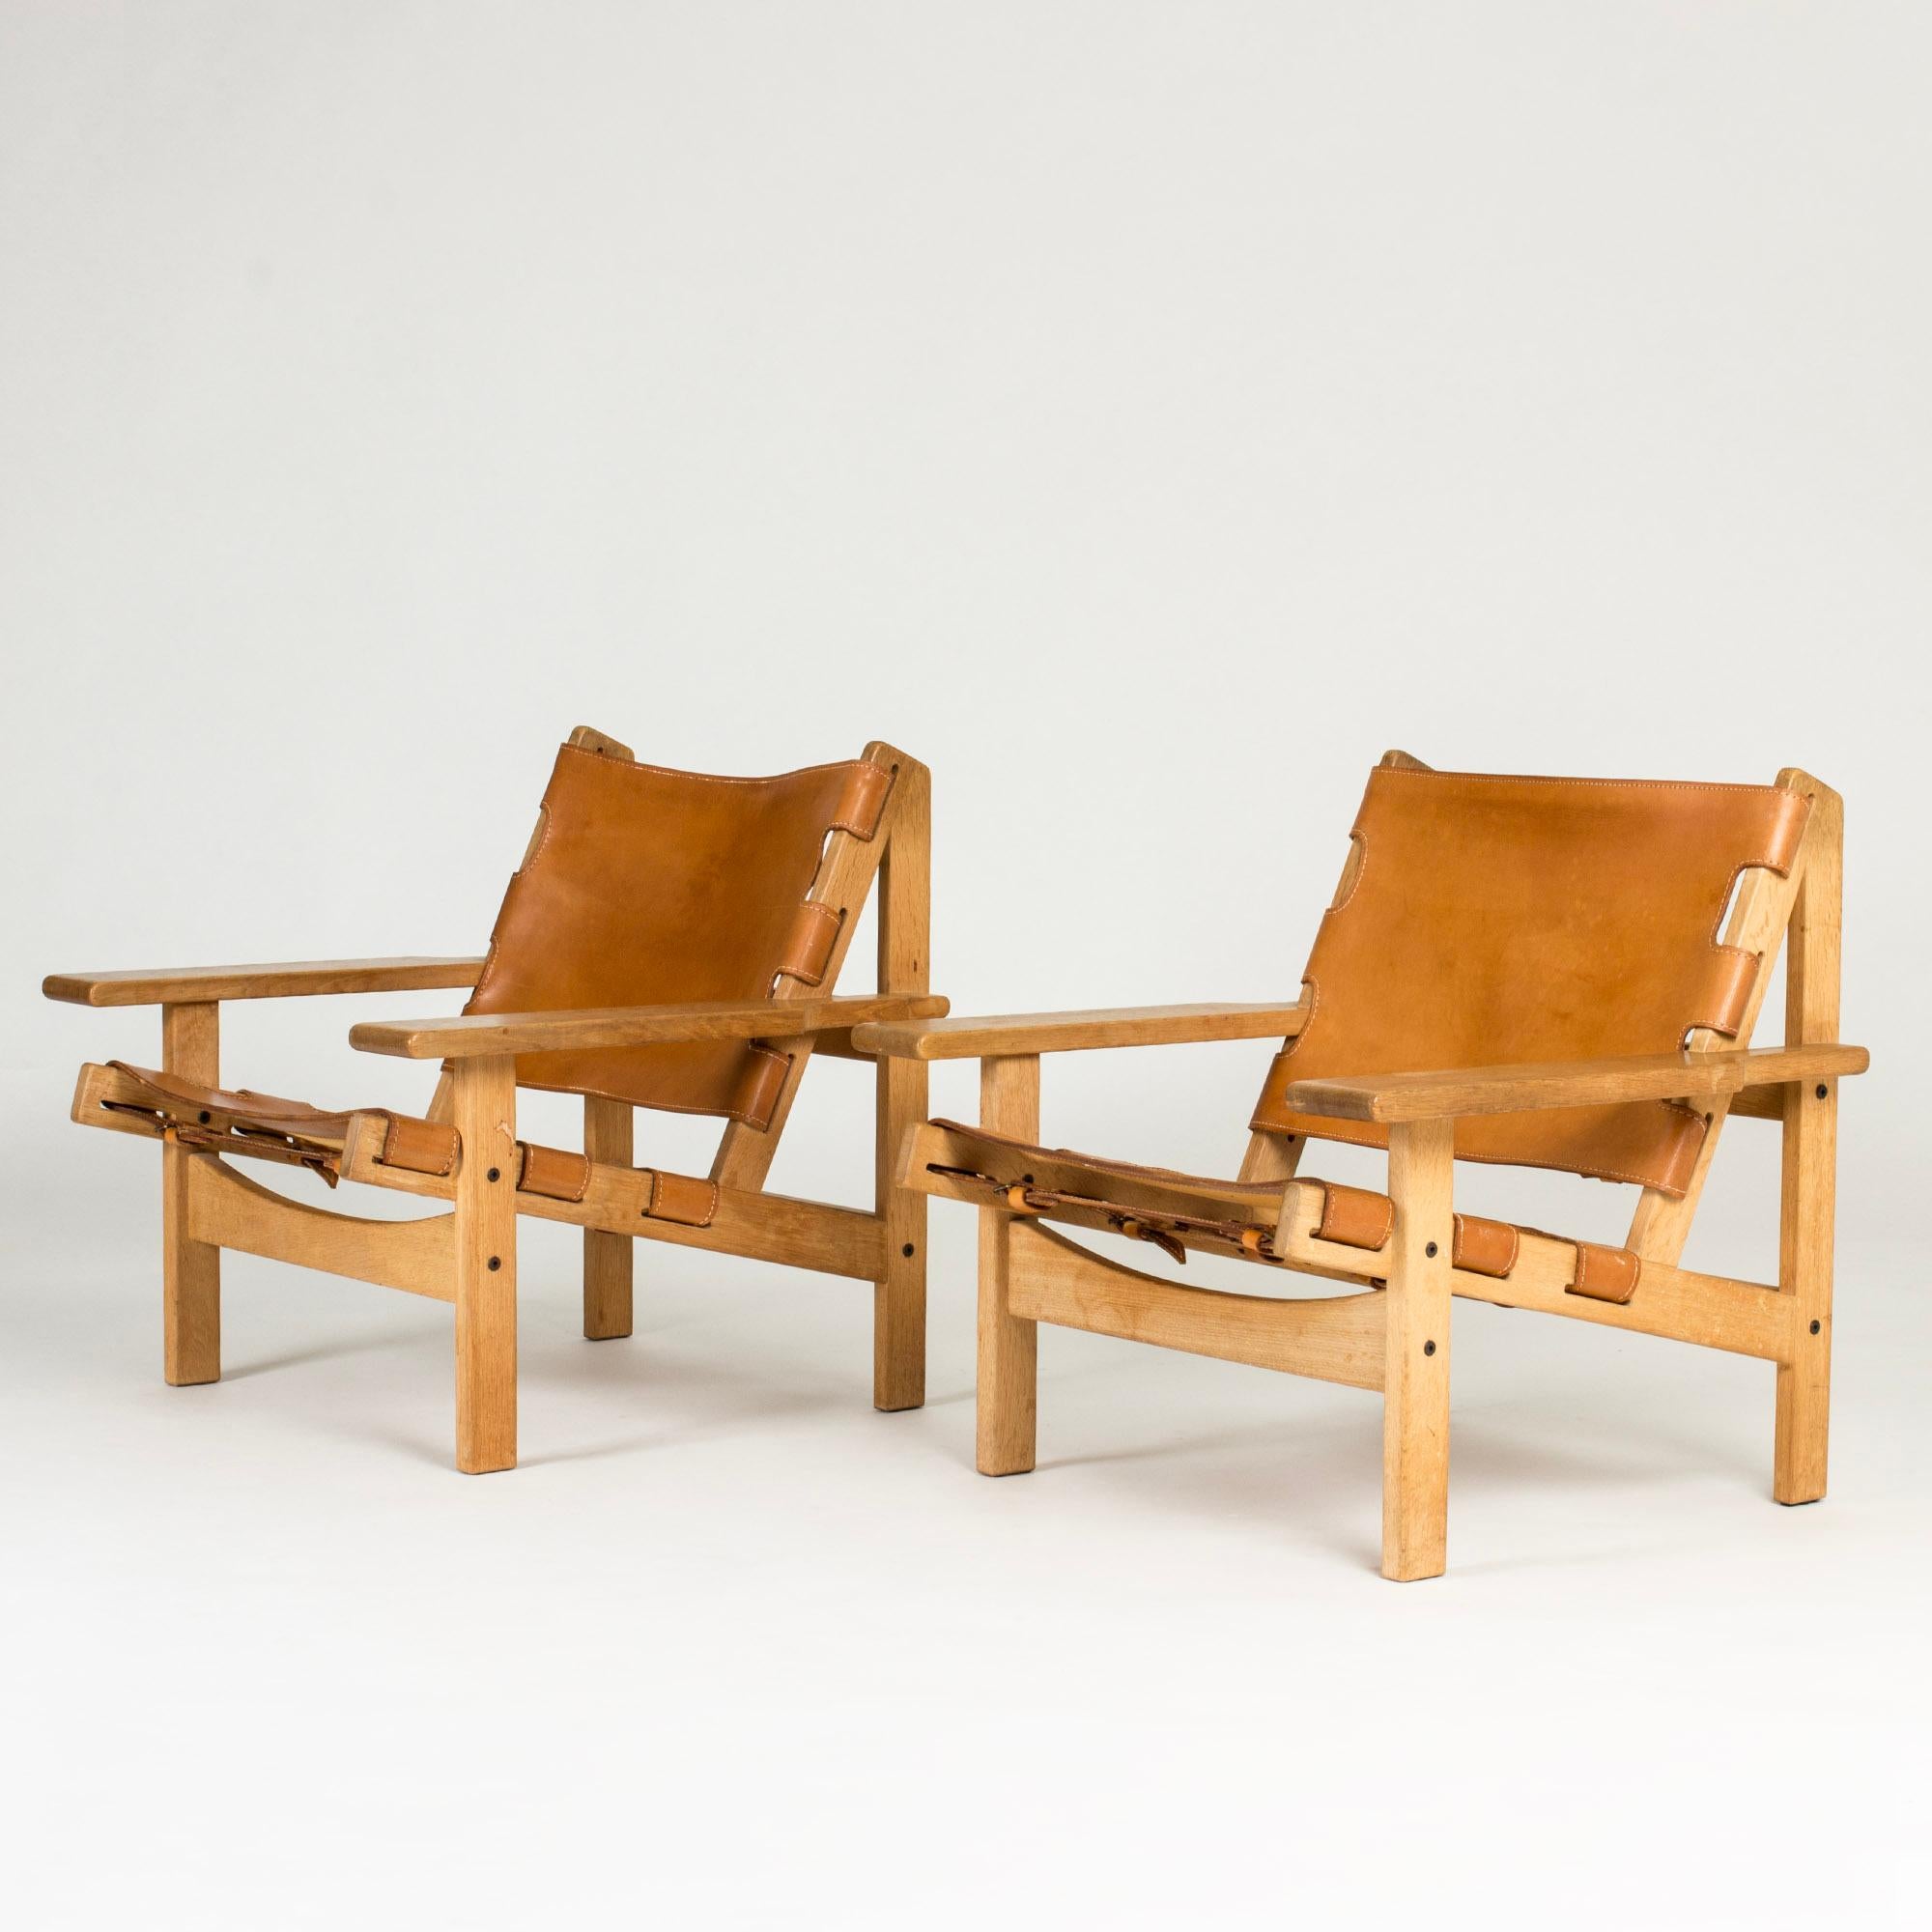 Paire de chaises de chasse cool de Kurt Østervig, modèle 168. Fabriqué en chêne avec des lignes distinctes, en cuir de couleur cognac avec des sangles décoratives dans le dos.